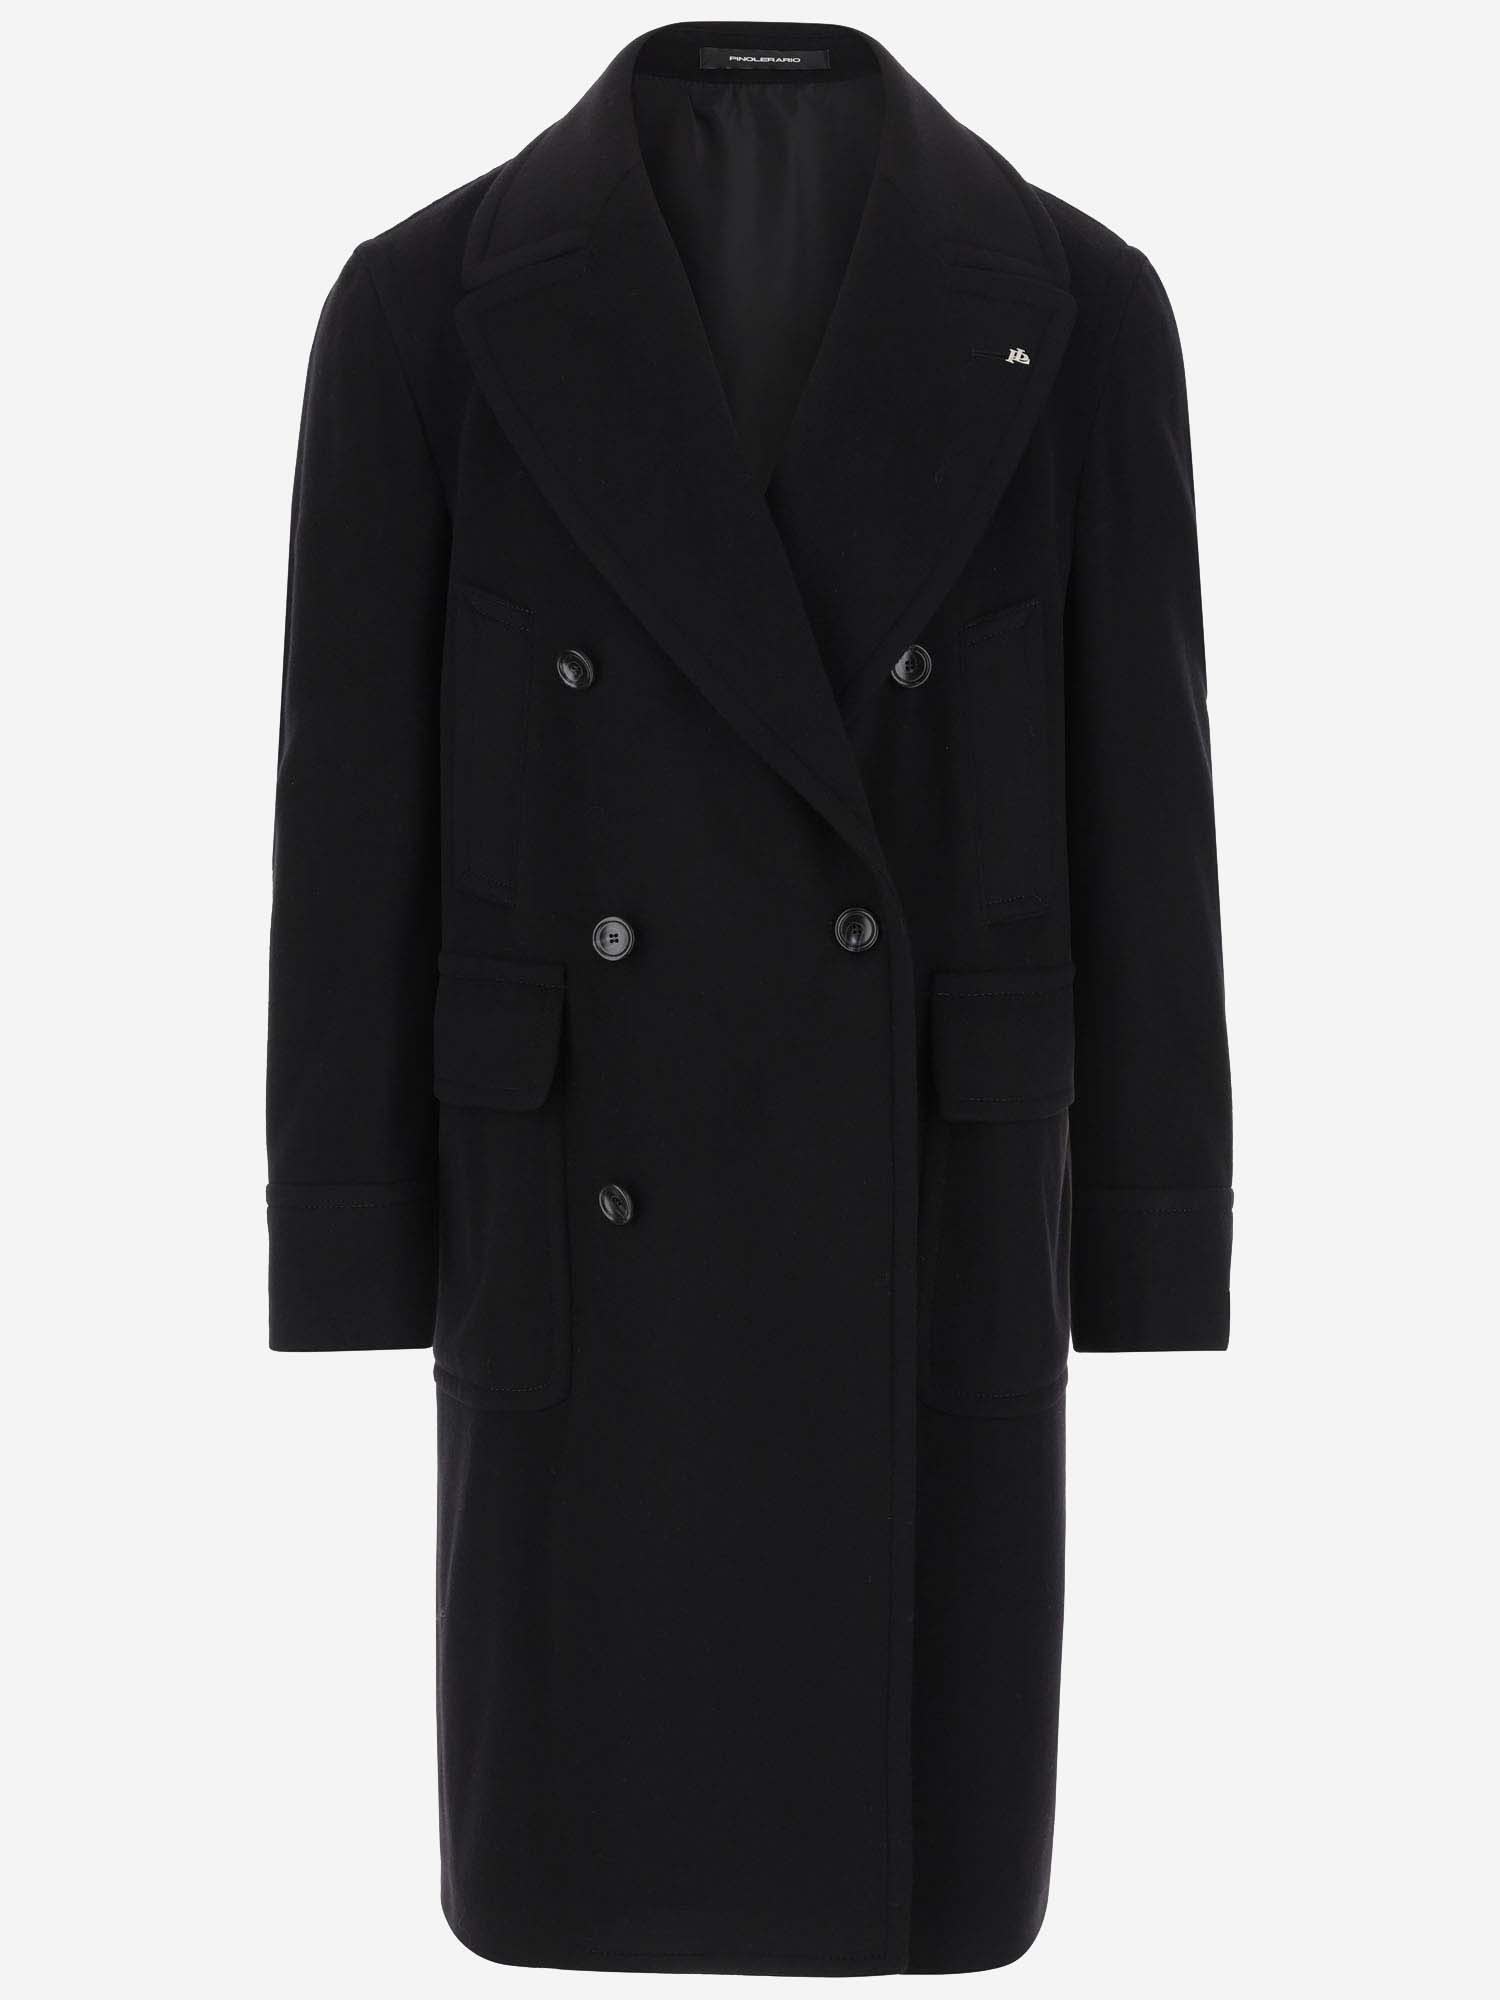 Tagliatore Wool And Cashmere Coat In Black